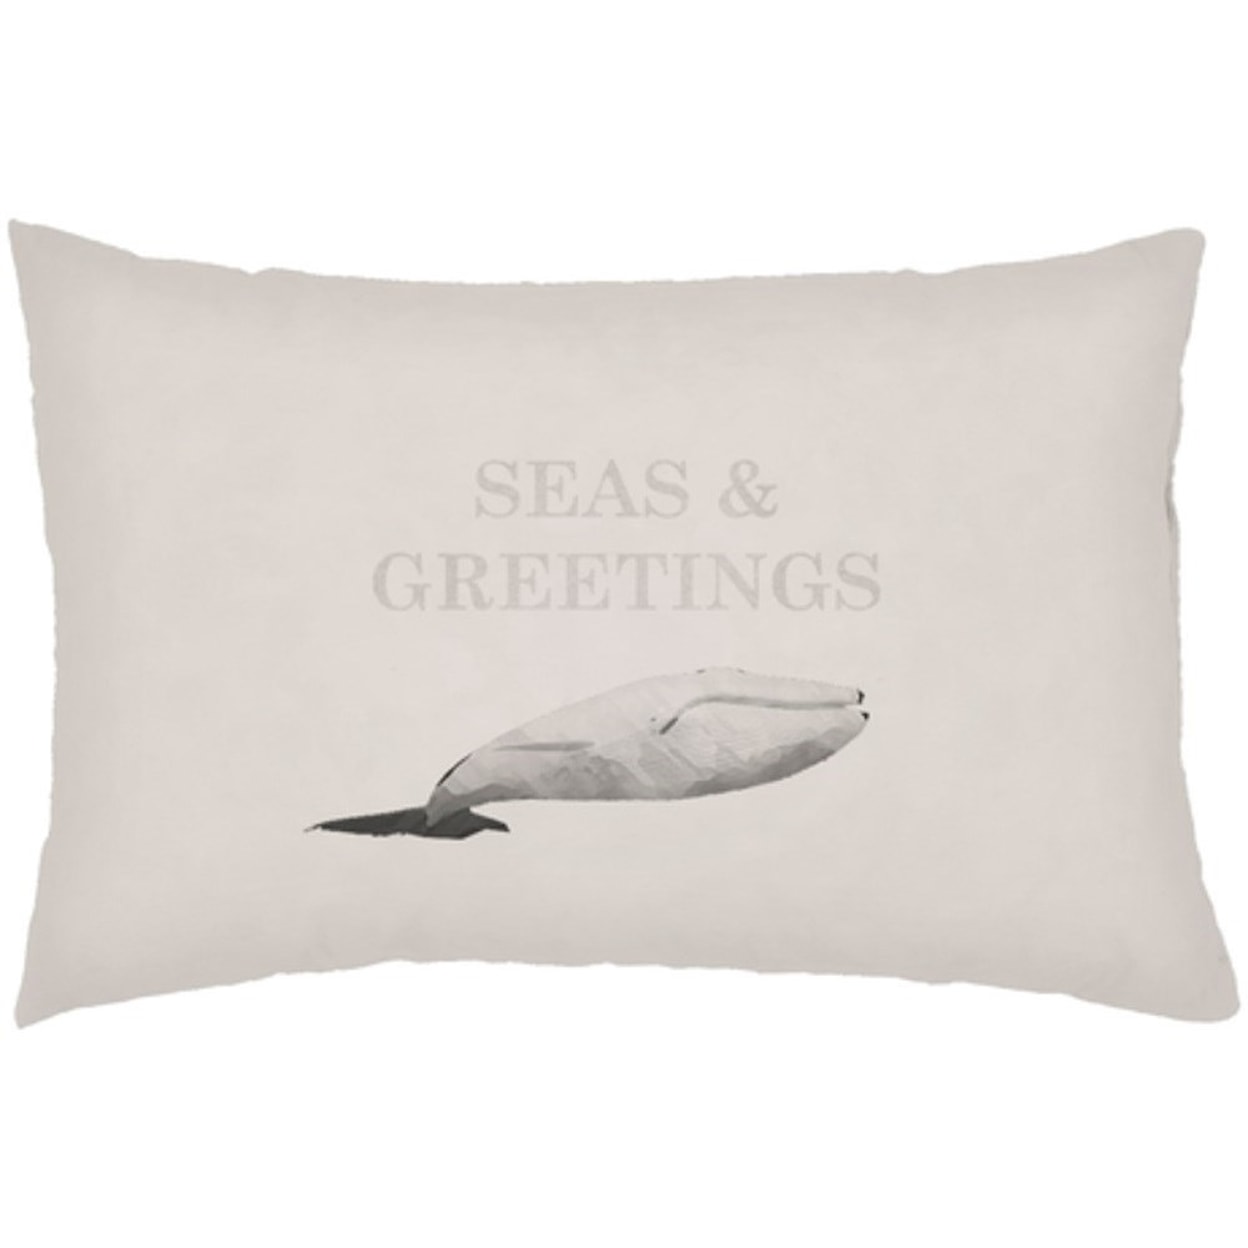 Surya Seas & Greetings Pillow